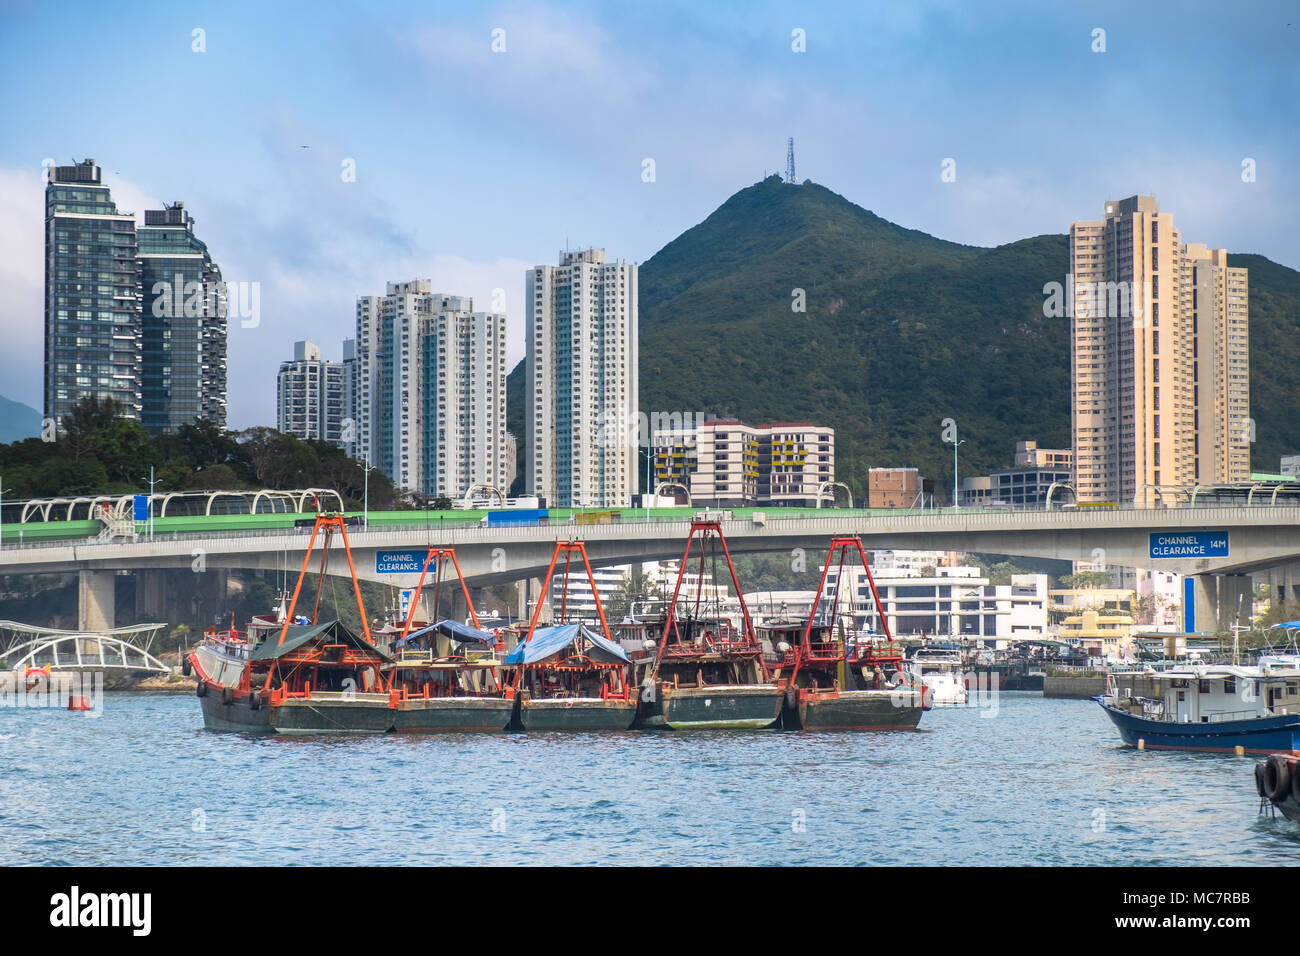 Attività di pesca i pescherecci con reti da traino a Hong Kong la baia di Aberdeen. Ponte di trasporto, edifici, grattacieli sullo sfondo. La geometria della città e del sud est asiatico per la splendida natura Foto Stock